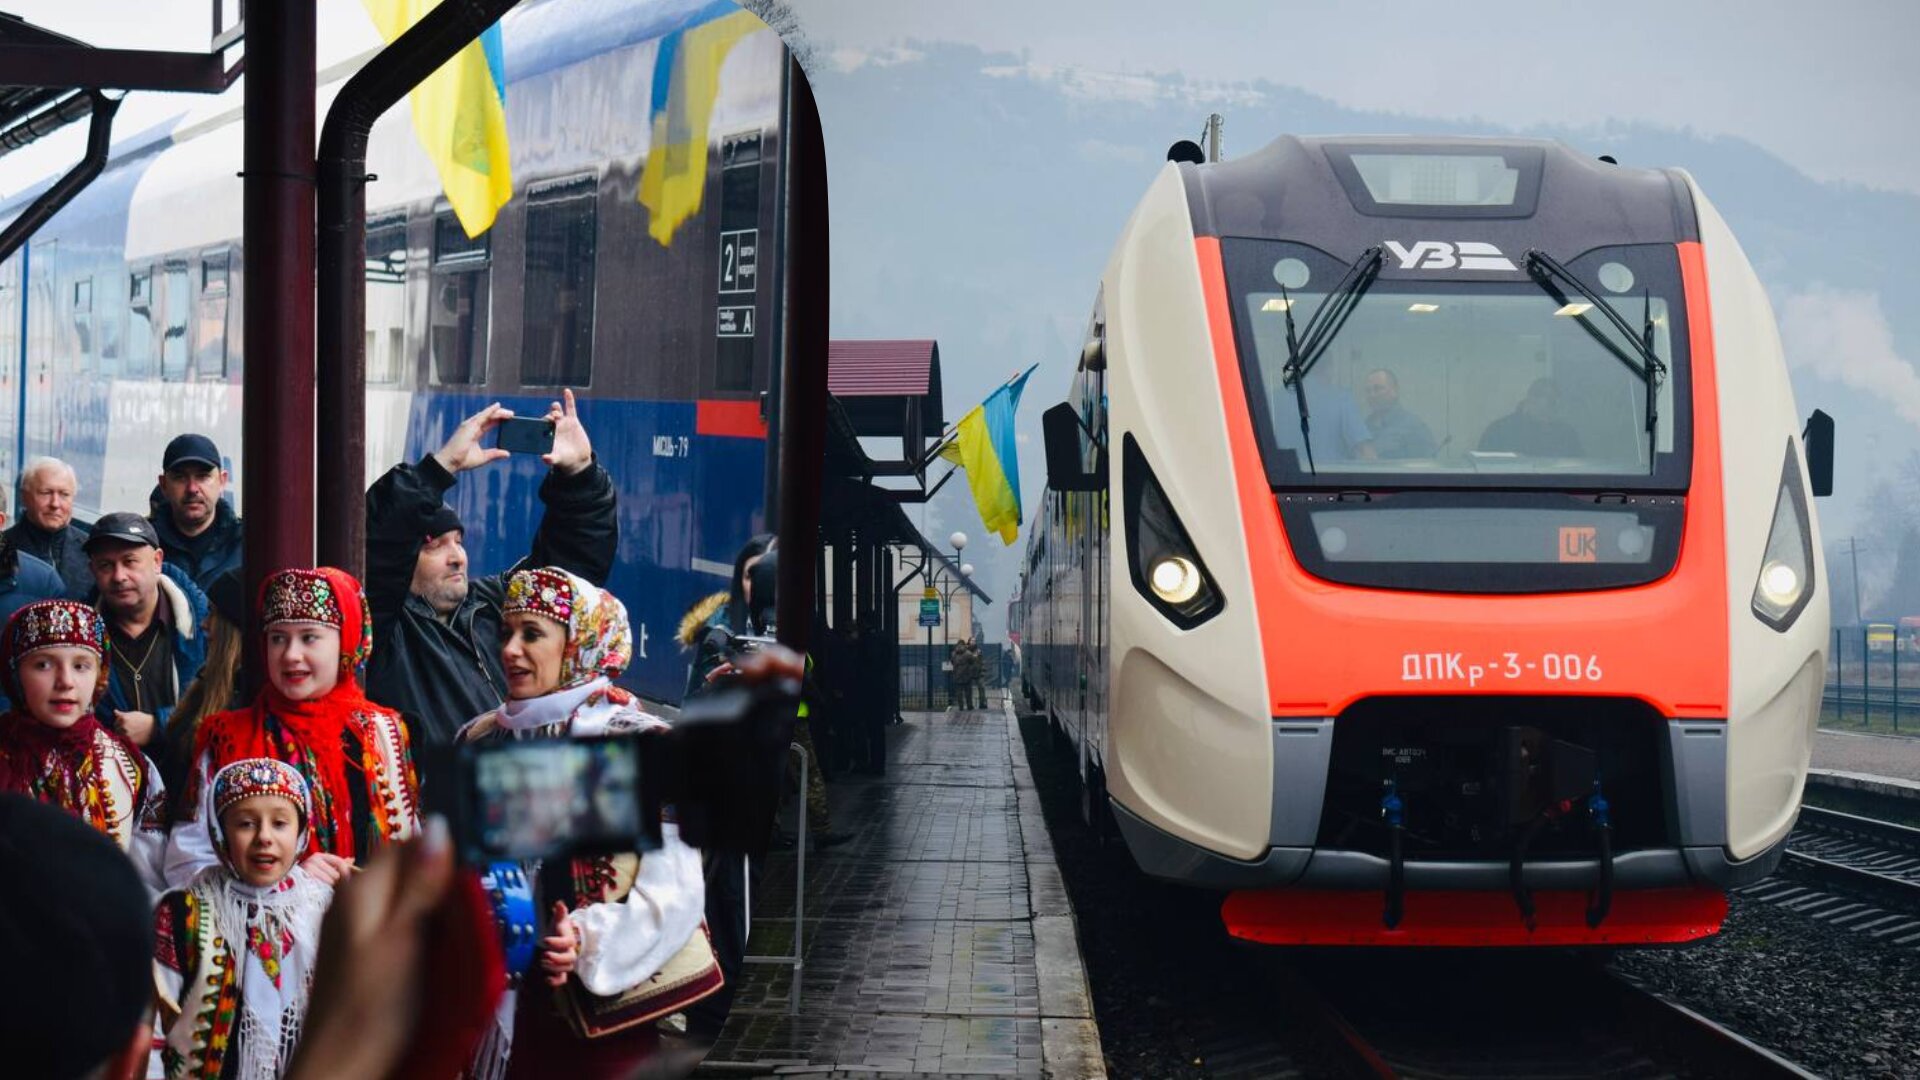 Сьогодні поїзд №753 Л, сполученням Рахів–Валя-Вішеулуй (Румунія) здійснив свій перший офіційний рейс.